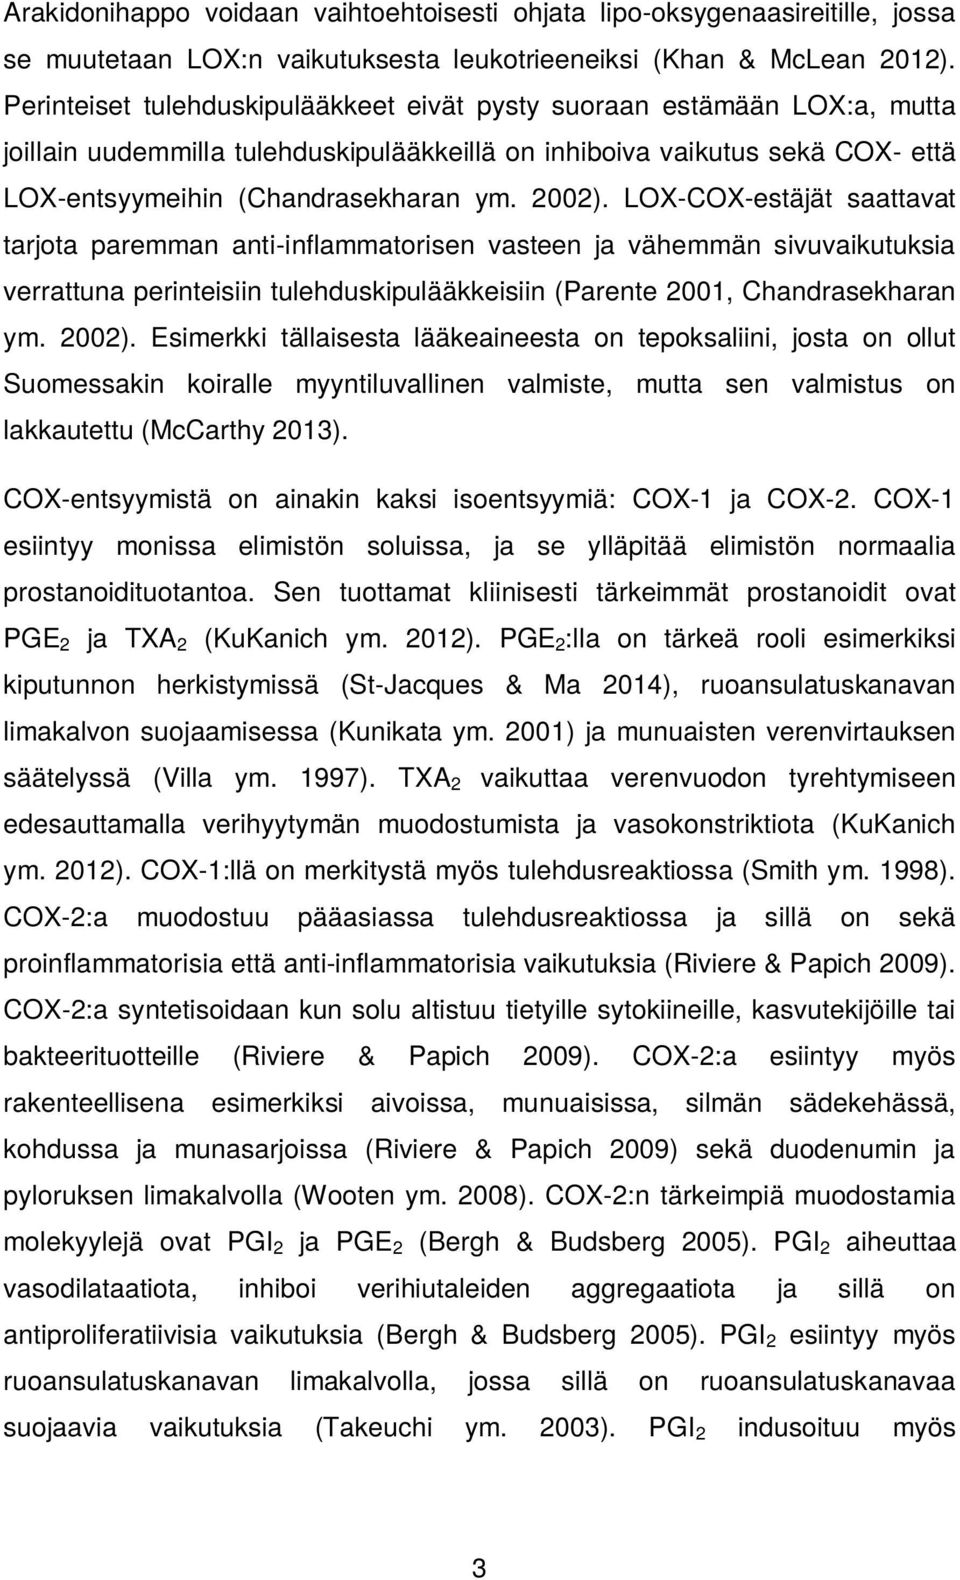 LOX-COX-estäjät saattavat tarjota paremman anti-inflammatorisen vasteen ja vähemmän sivuvaikutuksia verrattuna perinteisiin tulehduskipulääkkeisiin (Parente 2001, Chandrasekharan ym. 2002).